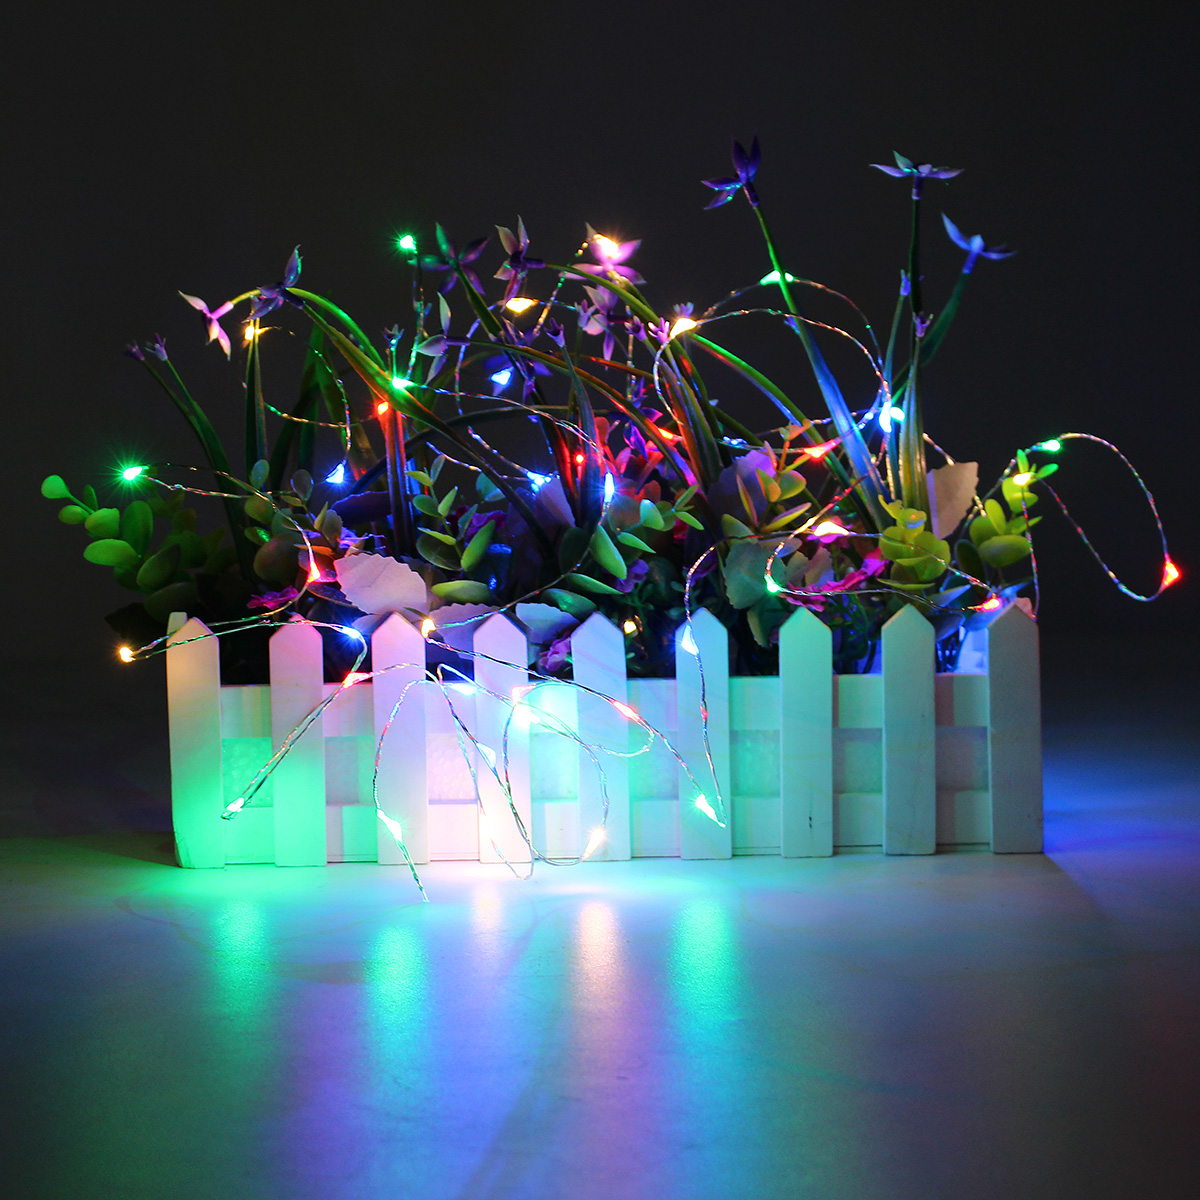 5M Guirlande Lumineuse Argentee Flexible avec 50 LED Alimentee par USB Decoration Noel Fete Mariage Maison